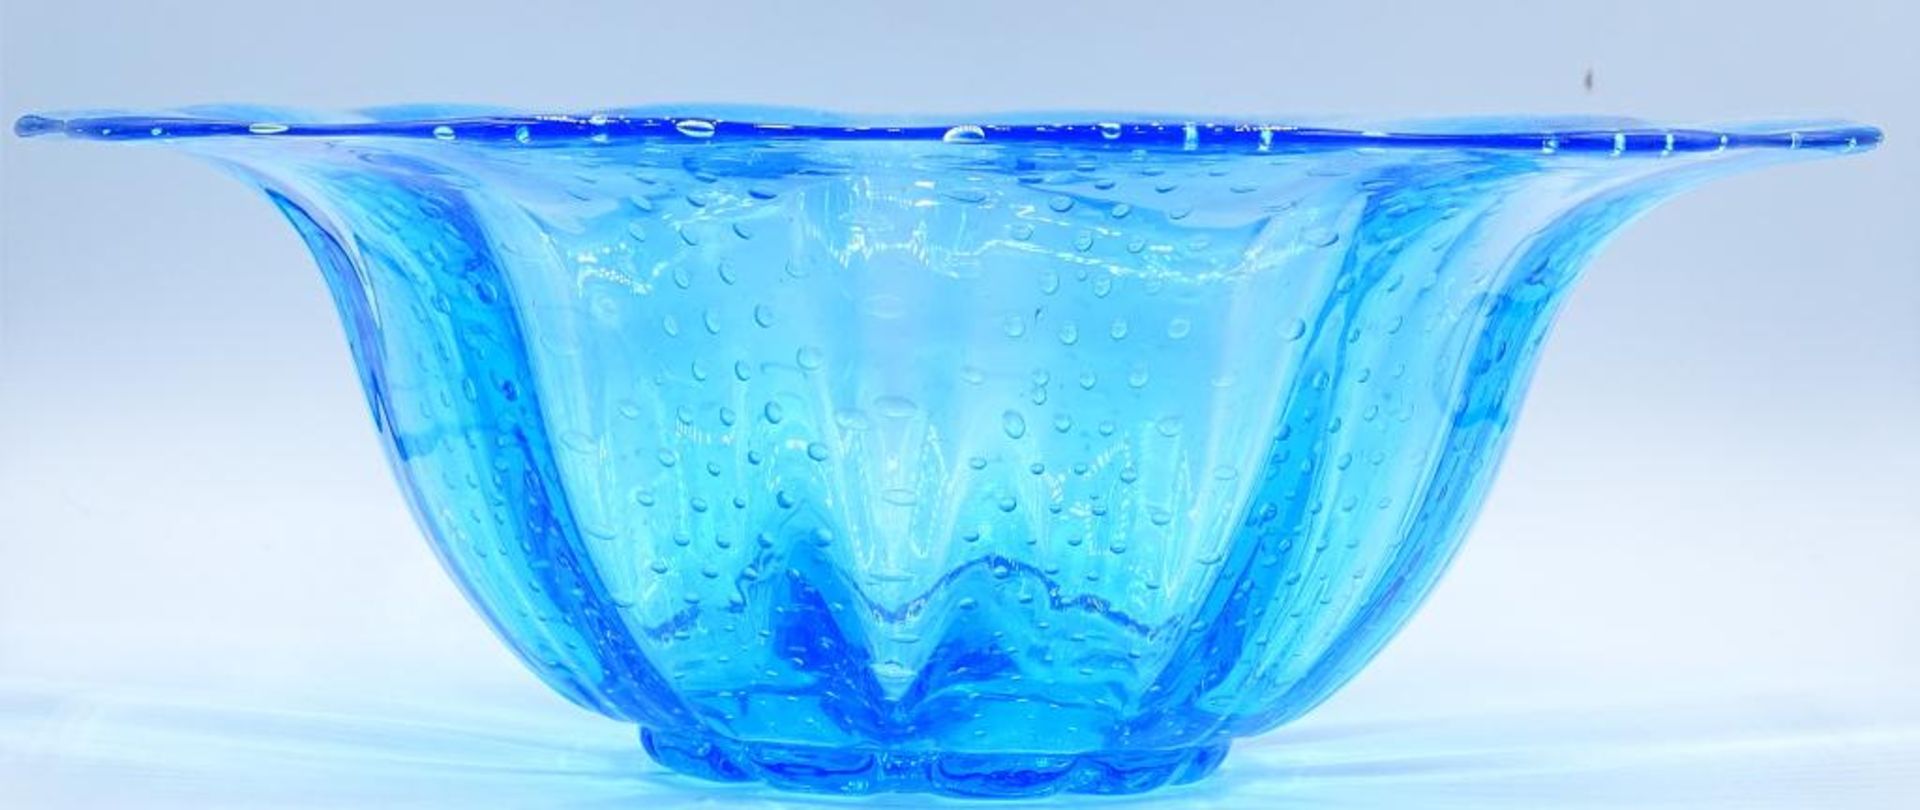 grosse Kristallschale, blau getönt, mit Luftbläschen, H-11 cm, D-31 cm, Handarbe - Bild 2 aus 4